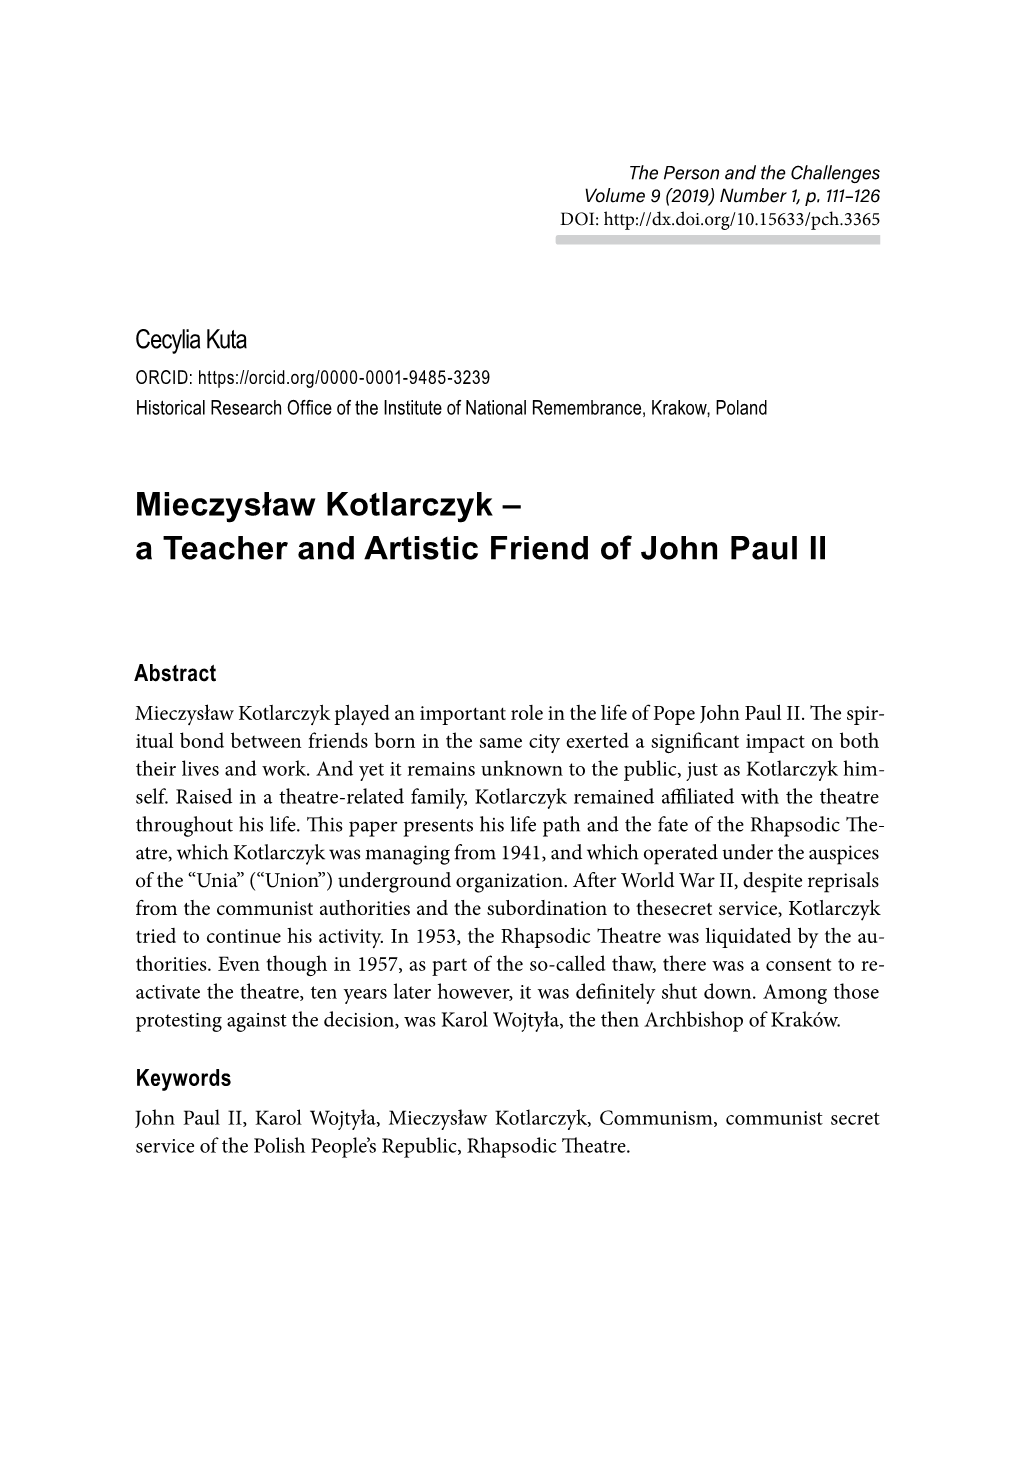 Mieczysław Kotlarczyk – a Teacher and Artistic Friend of John Paul II